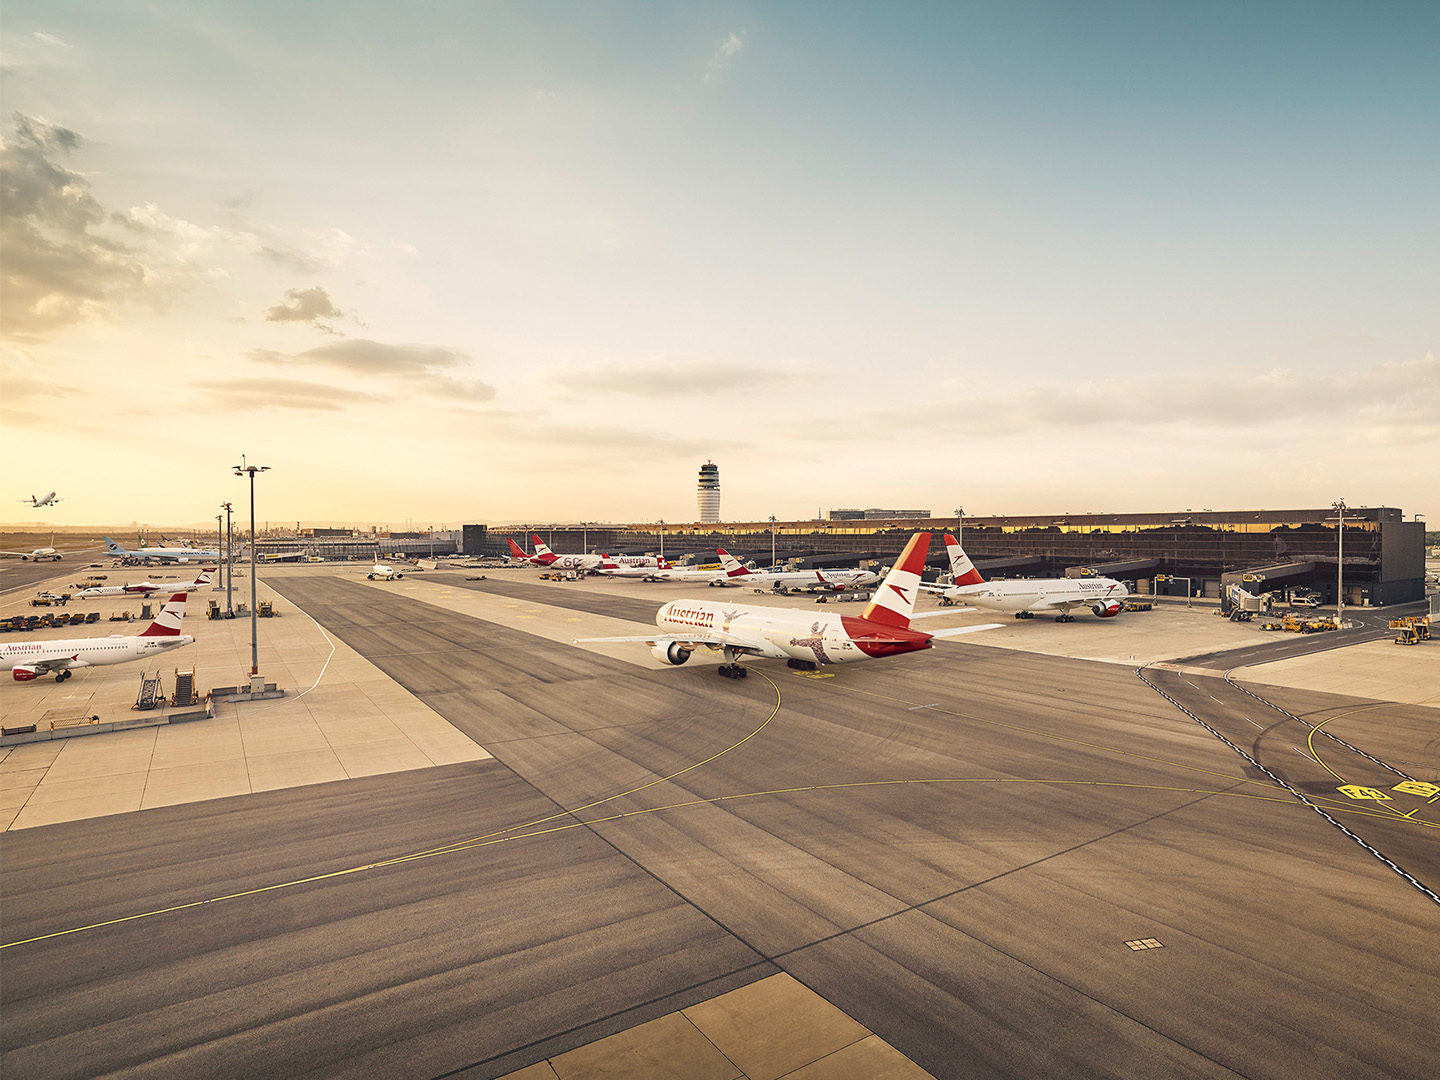 Foto: weiss rote Flugzeuge in Parkposition bei einem Flughafen